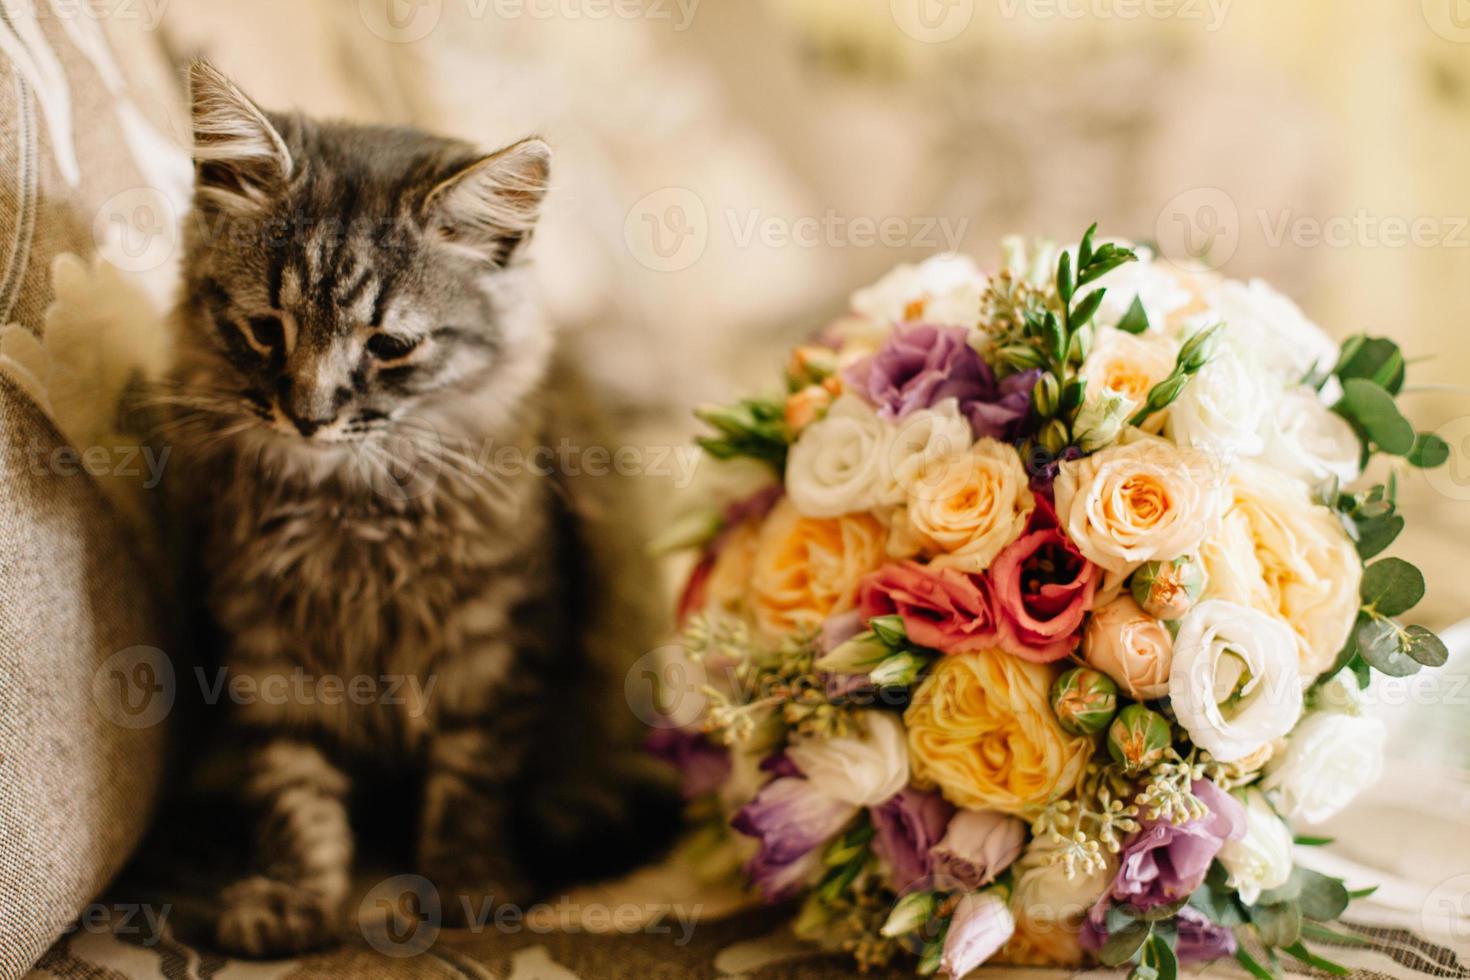 på de soffa Nästa till de brudens bukett skön Hem brun katt. katt, blommor, soffa, bukett, bröllop, morgon, hus, rum, inbjudan, Semester, firande, kattunge foto